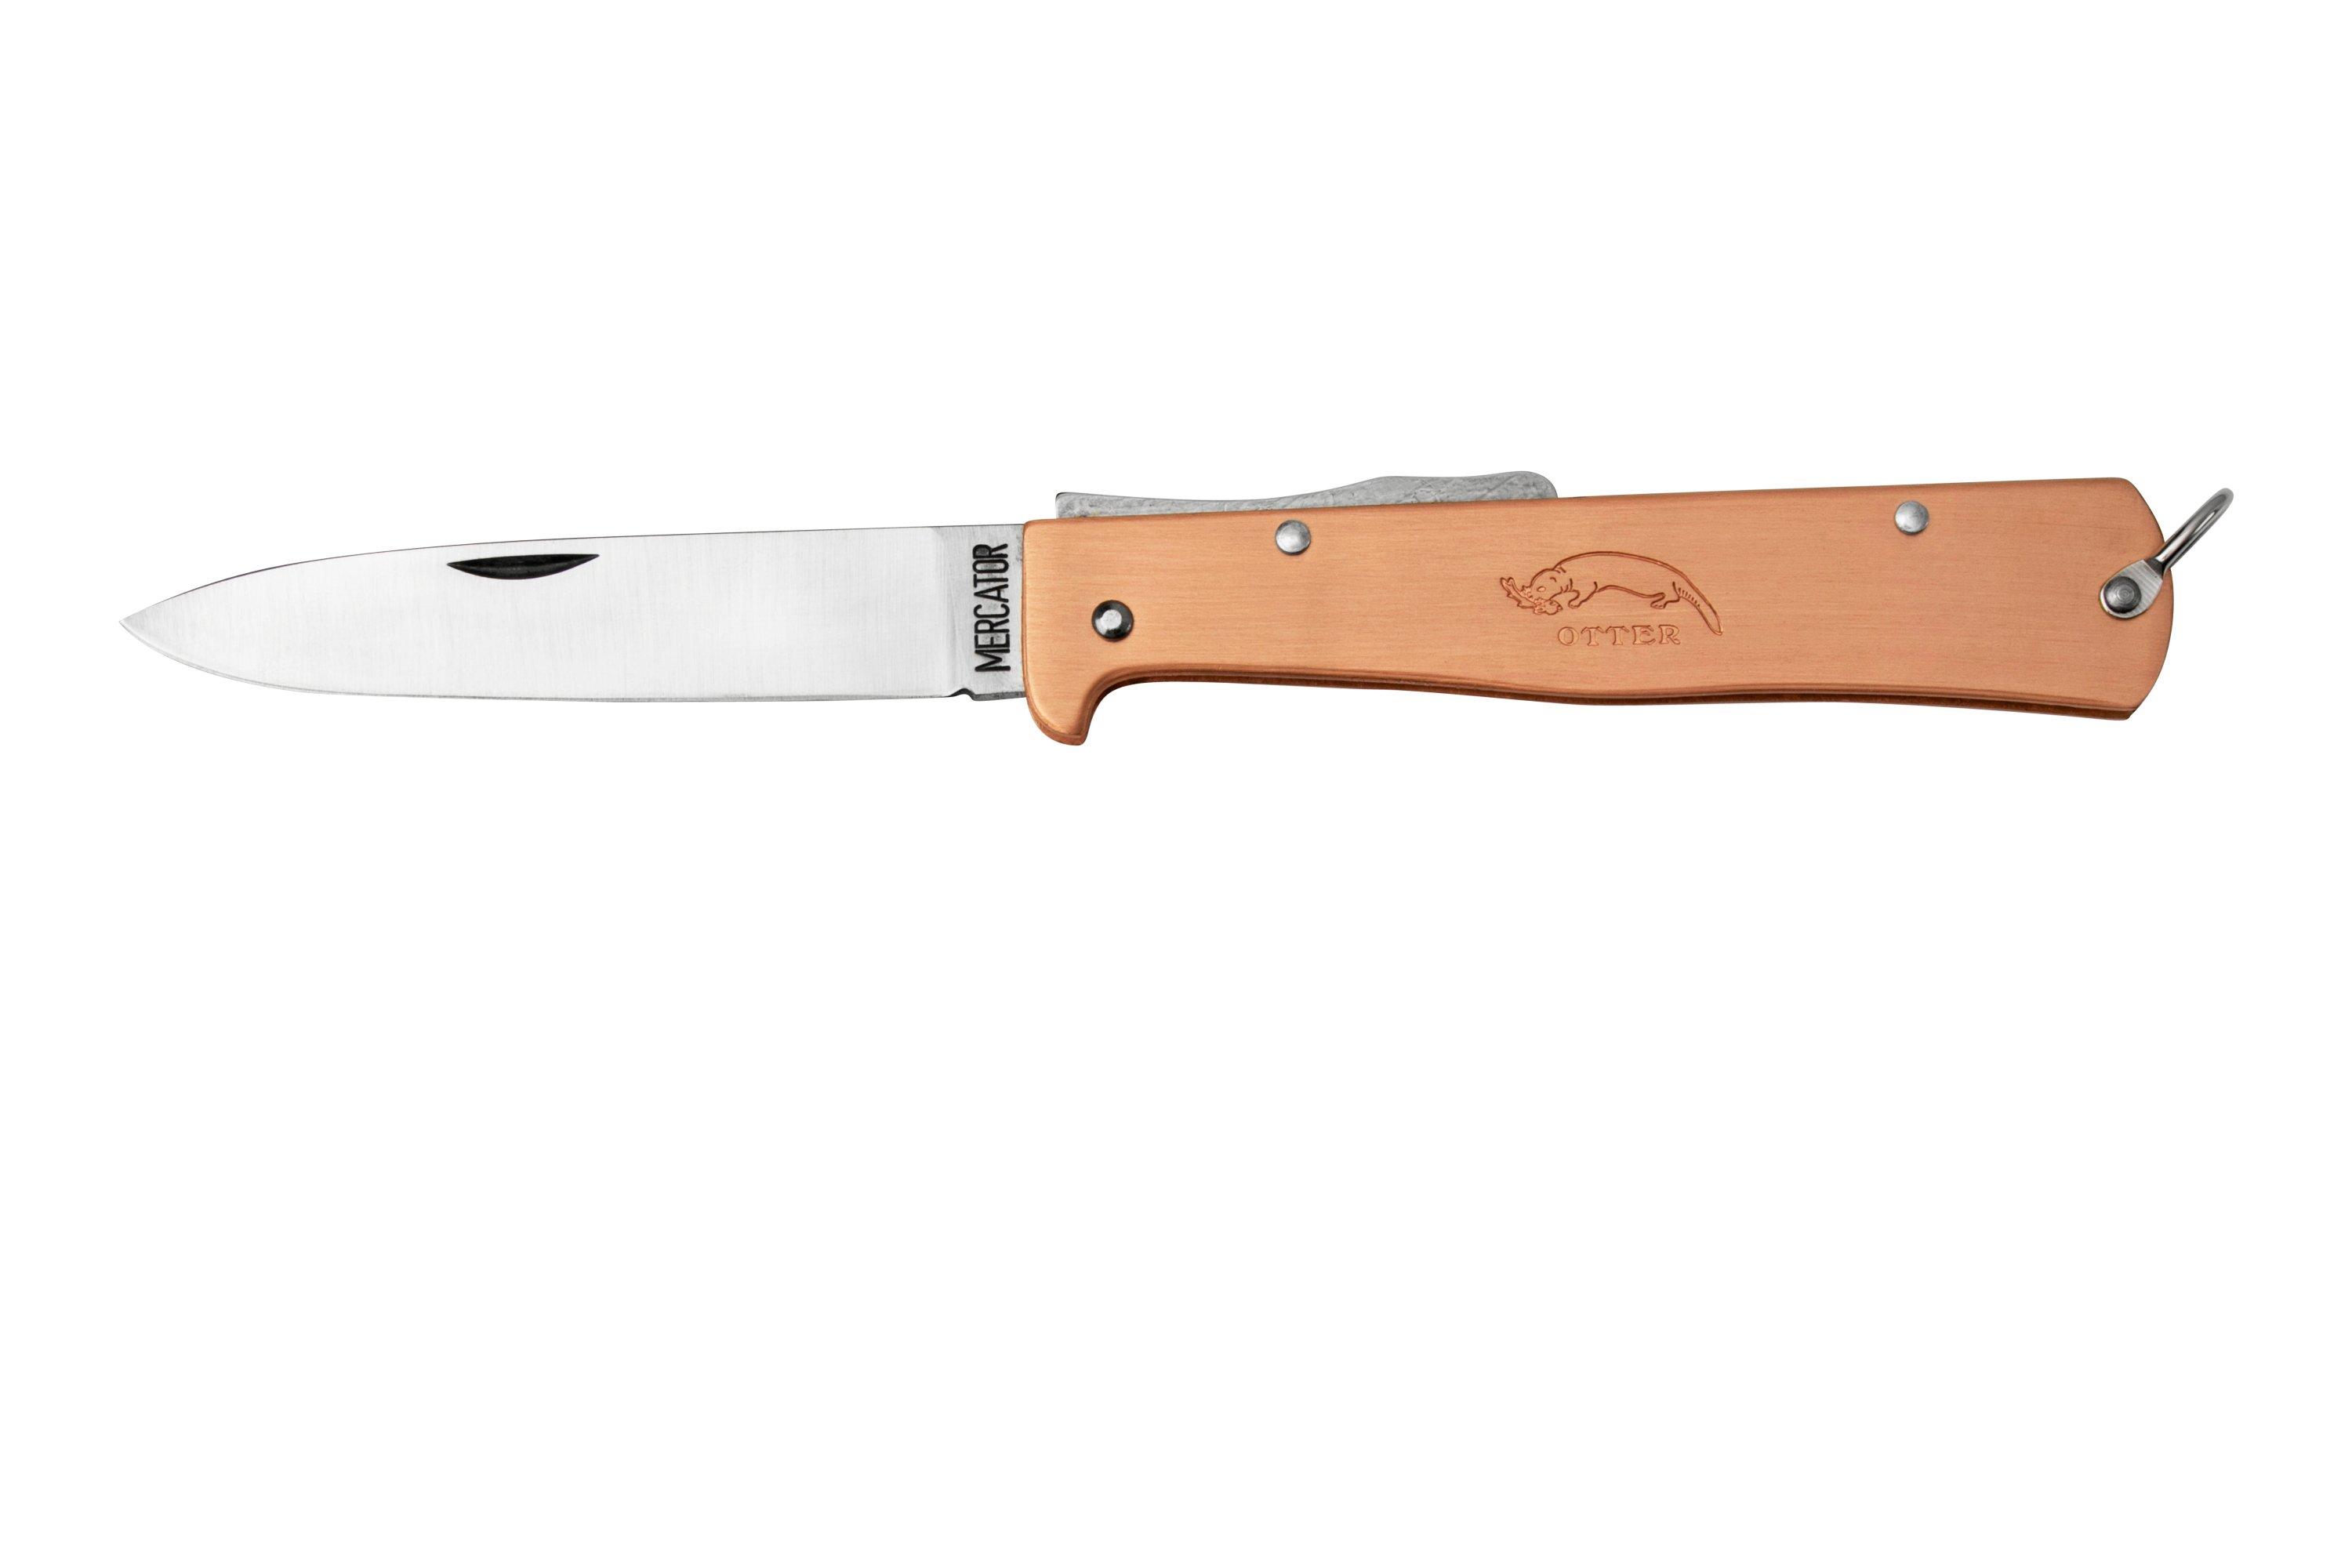 Otter Mercator 10-636 RG Large Copper Carbon Pocket clip, pocket knife